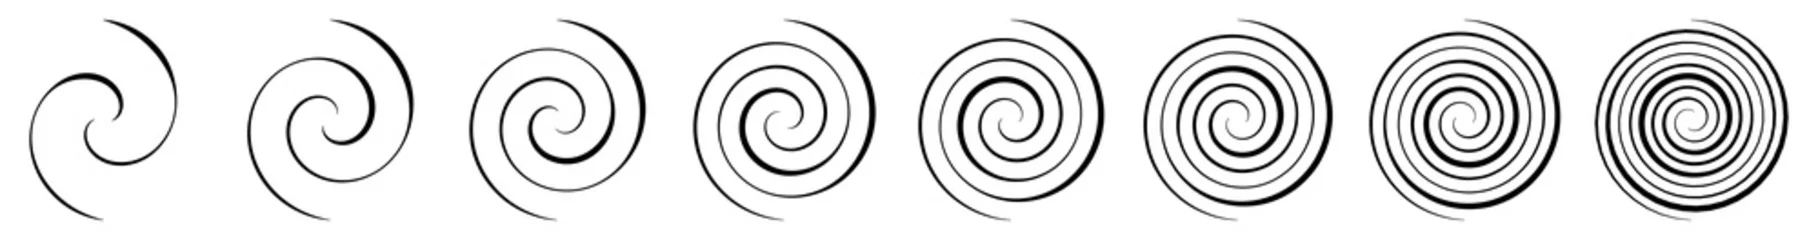 Tischdecke Spiral, swirl, twirl and whirl element. Helix, volute ripple, vortex shape © Pixxsa